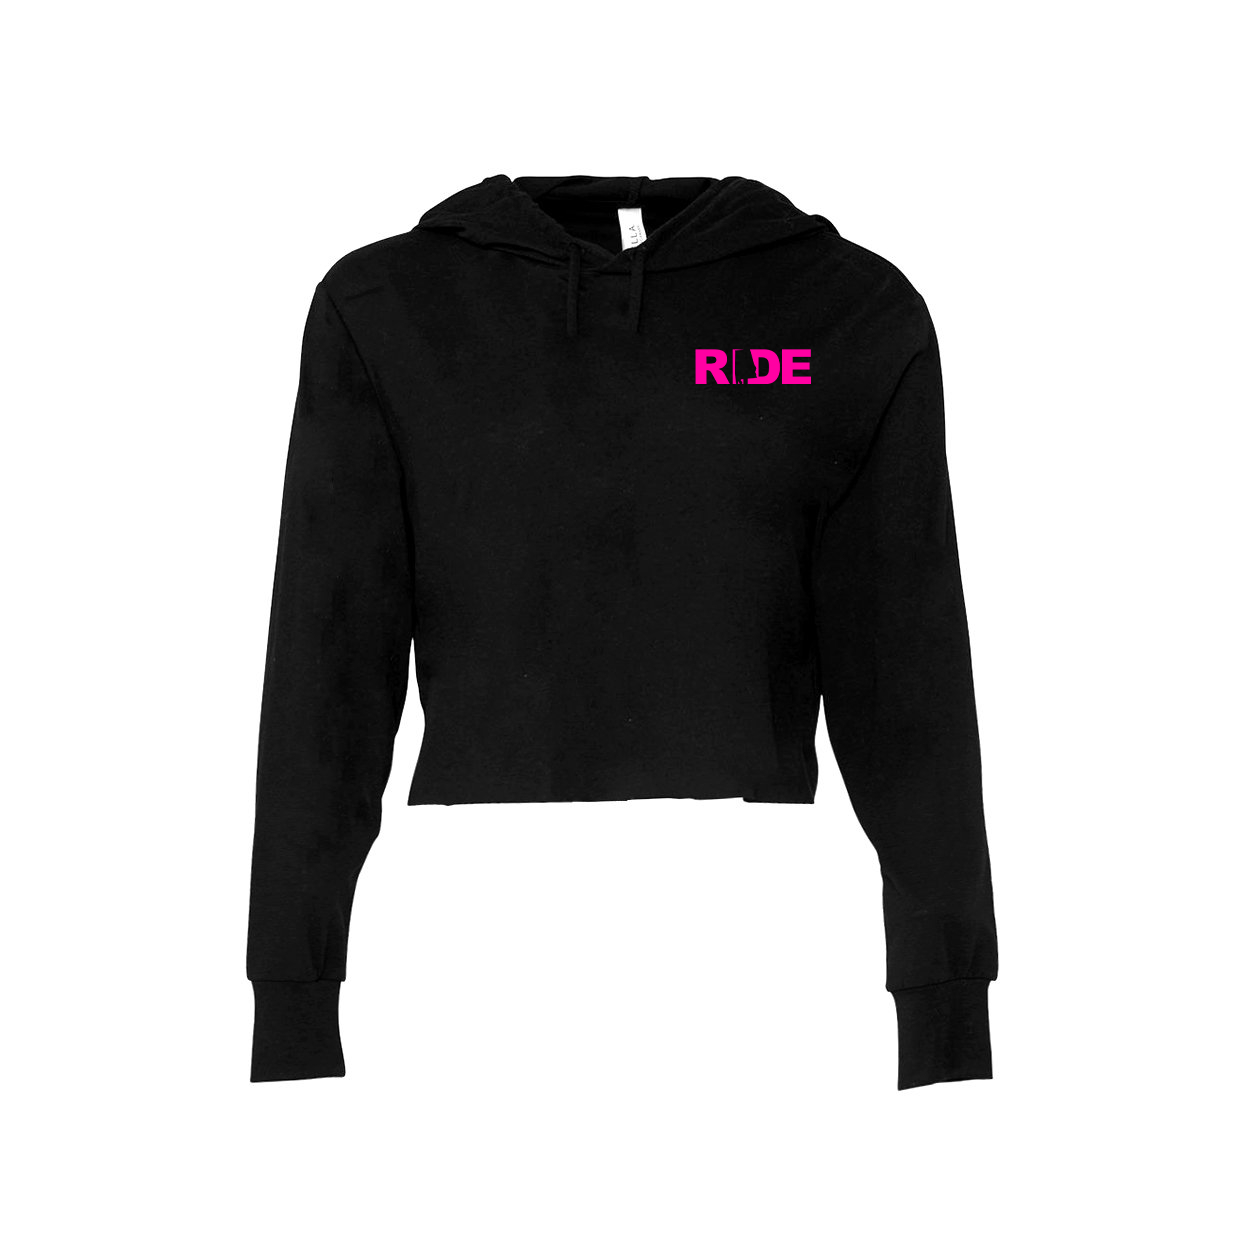 Ride Alabama Night Out Womens Cropped Sweatshirt Black (Pink Logo)